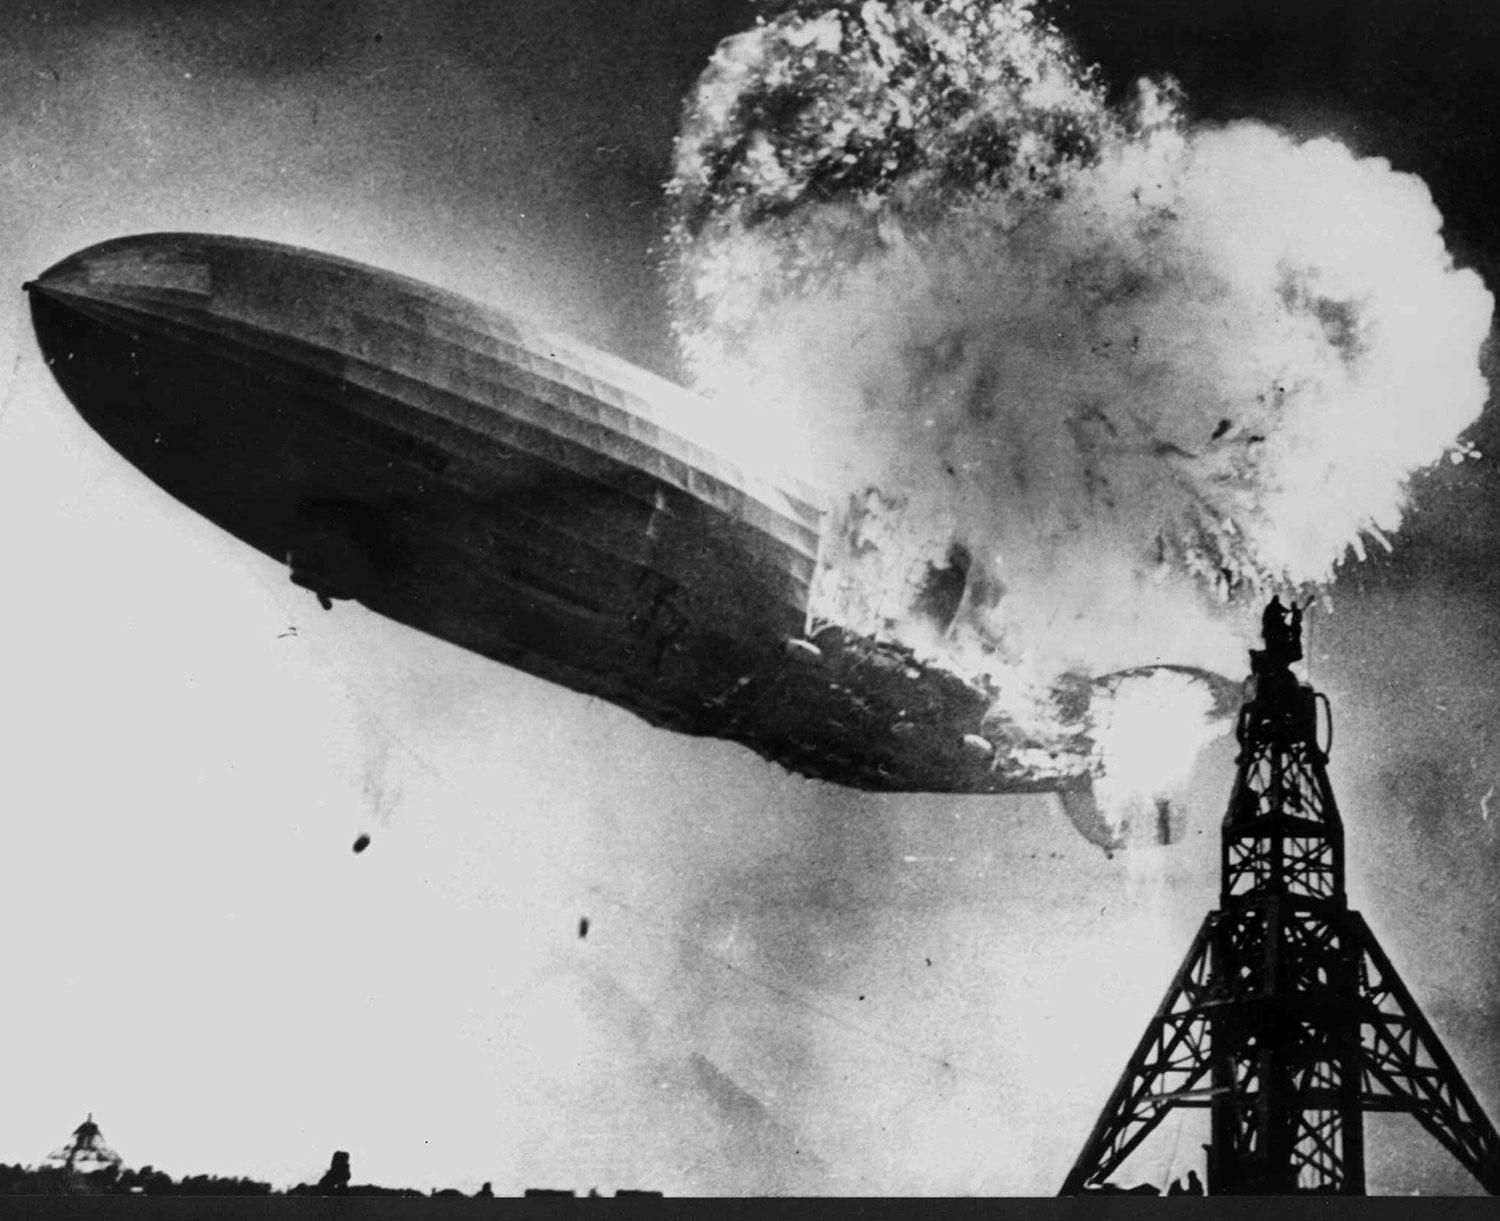 37 människor ombord på Hindenburg plus en på marken dog när luftskeppet brann upp under landning i New Jersey 1937.